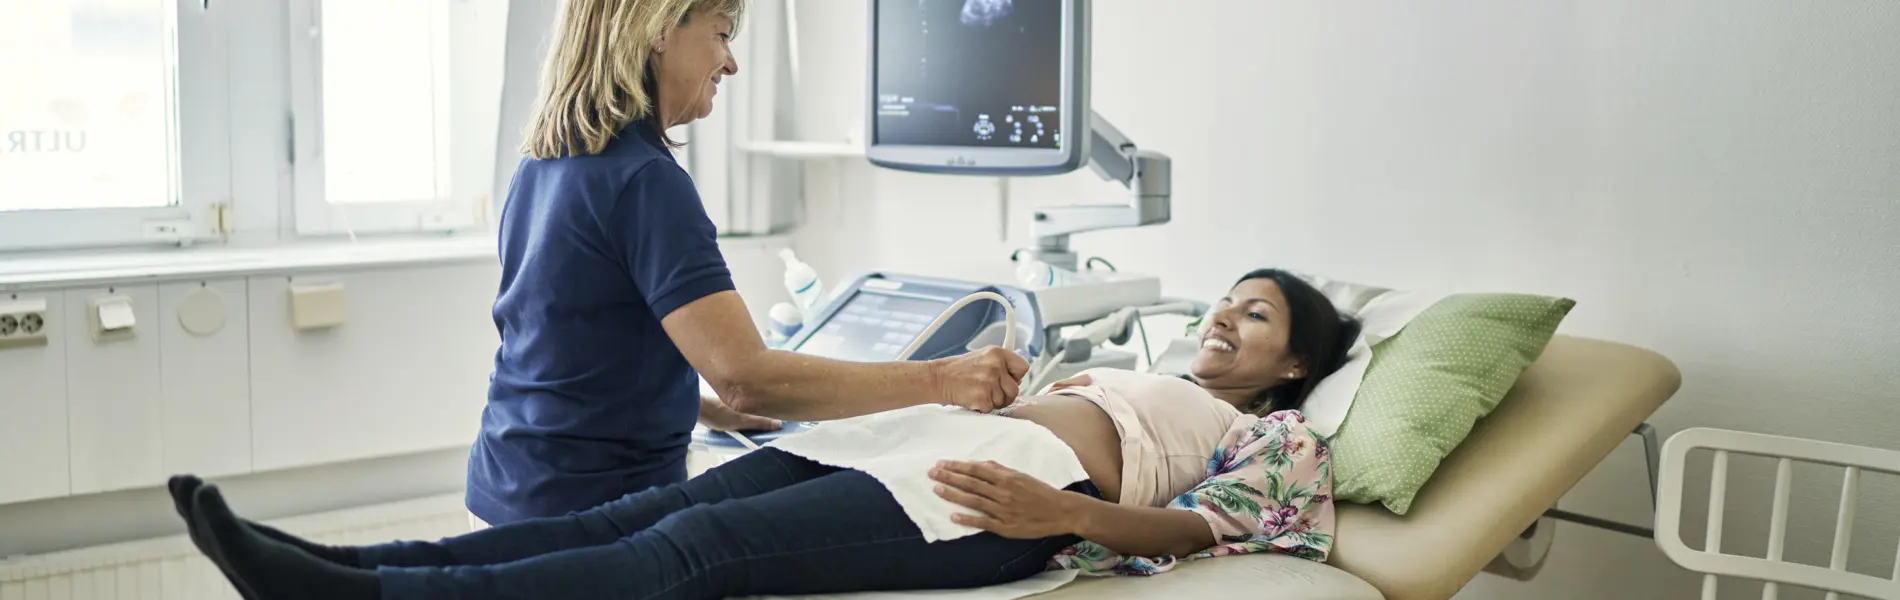 Sjukvårdklädd personal utför ultraljud på patient